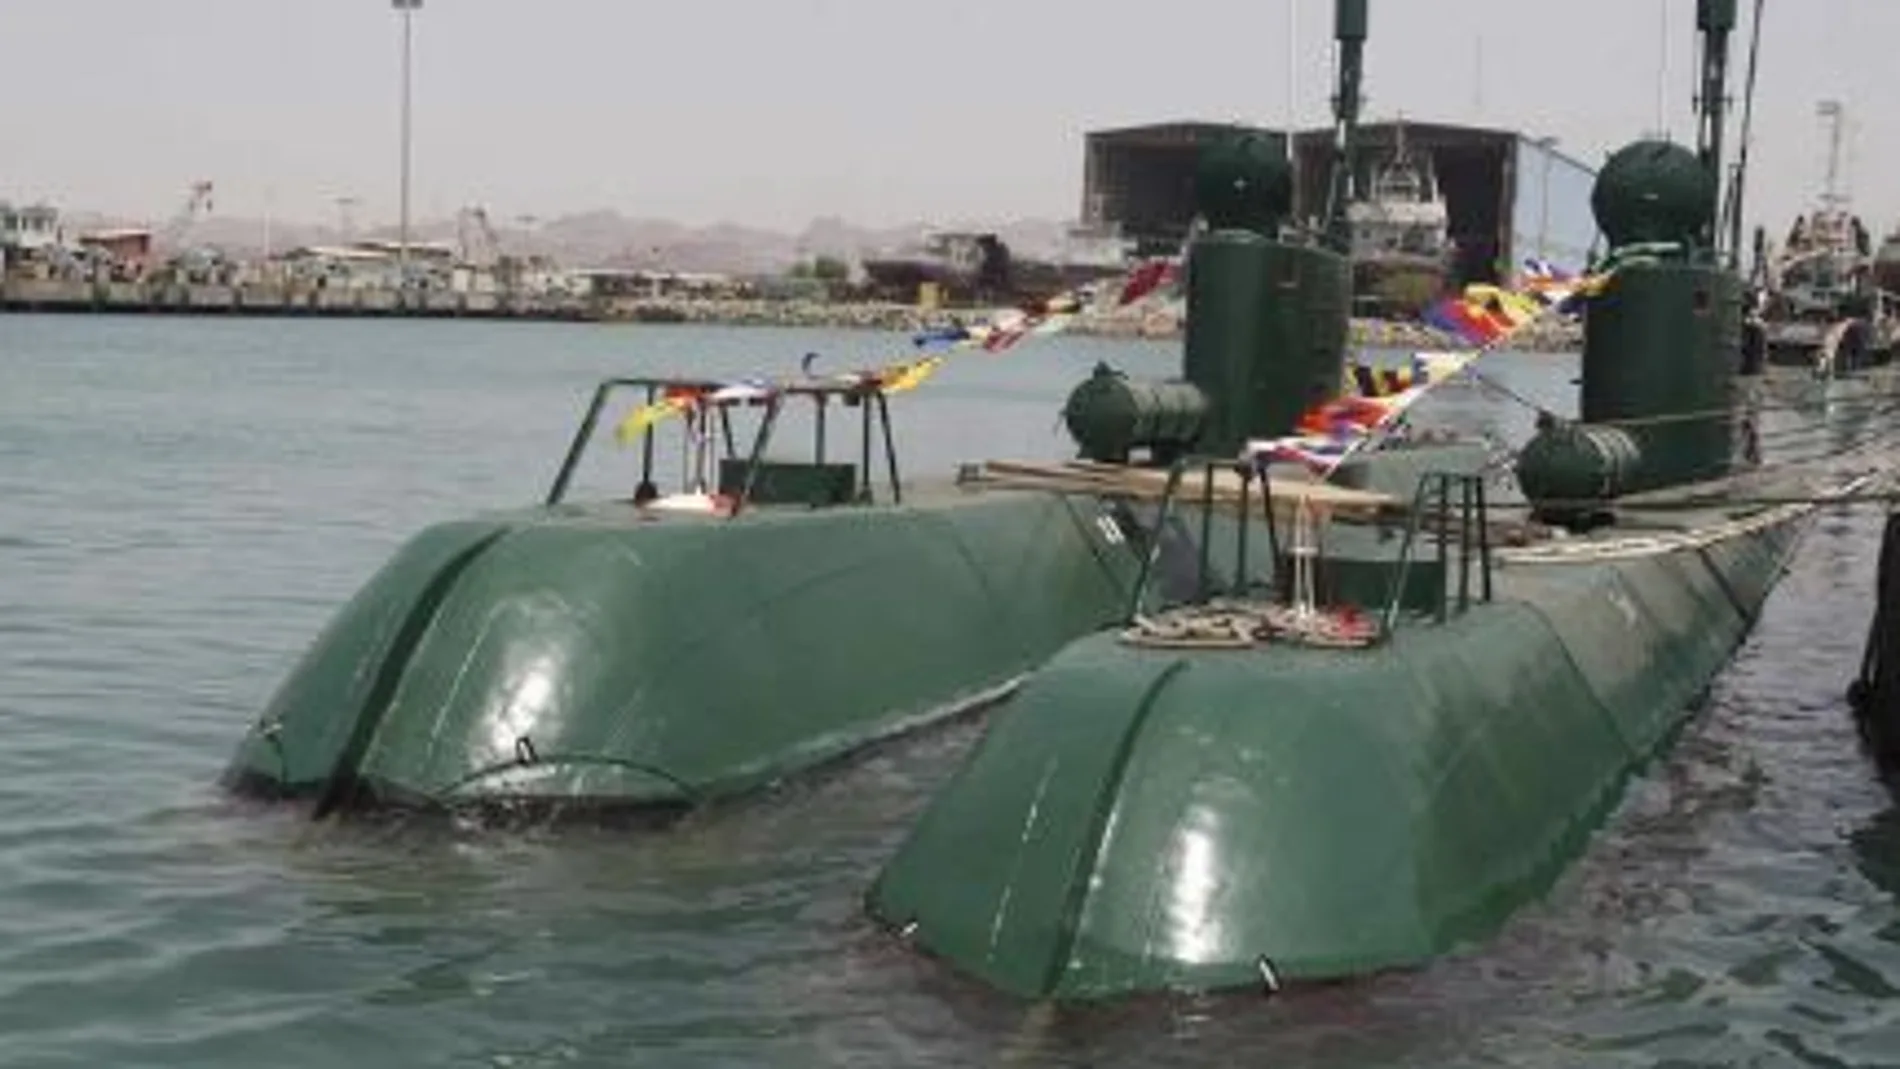 Los iraníes pretenden equipar al CGRI con submarinos Ghadir y Fateh